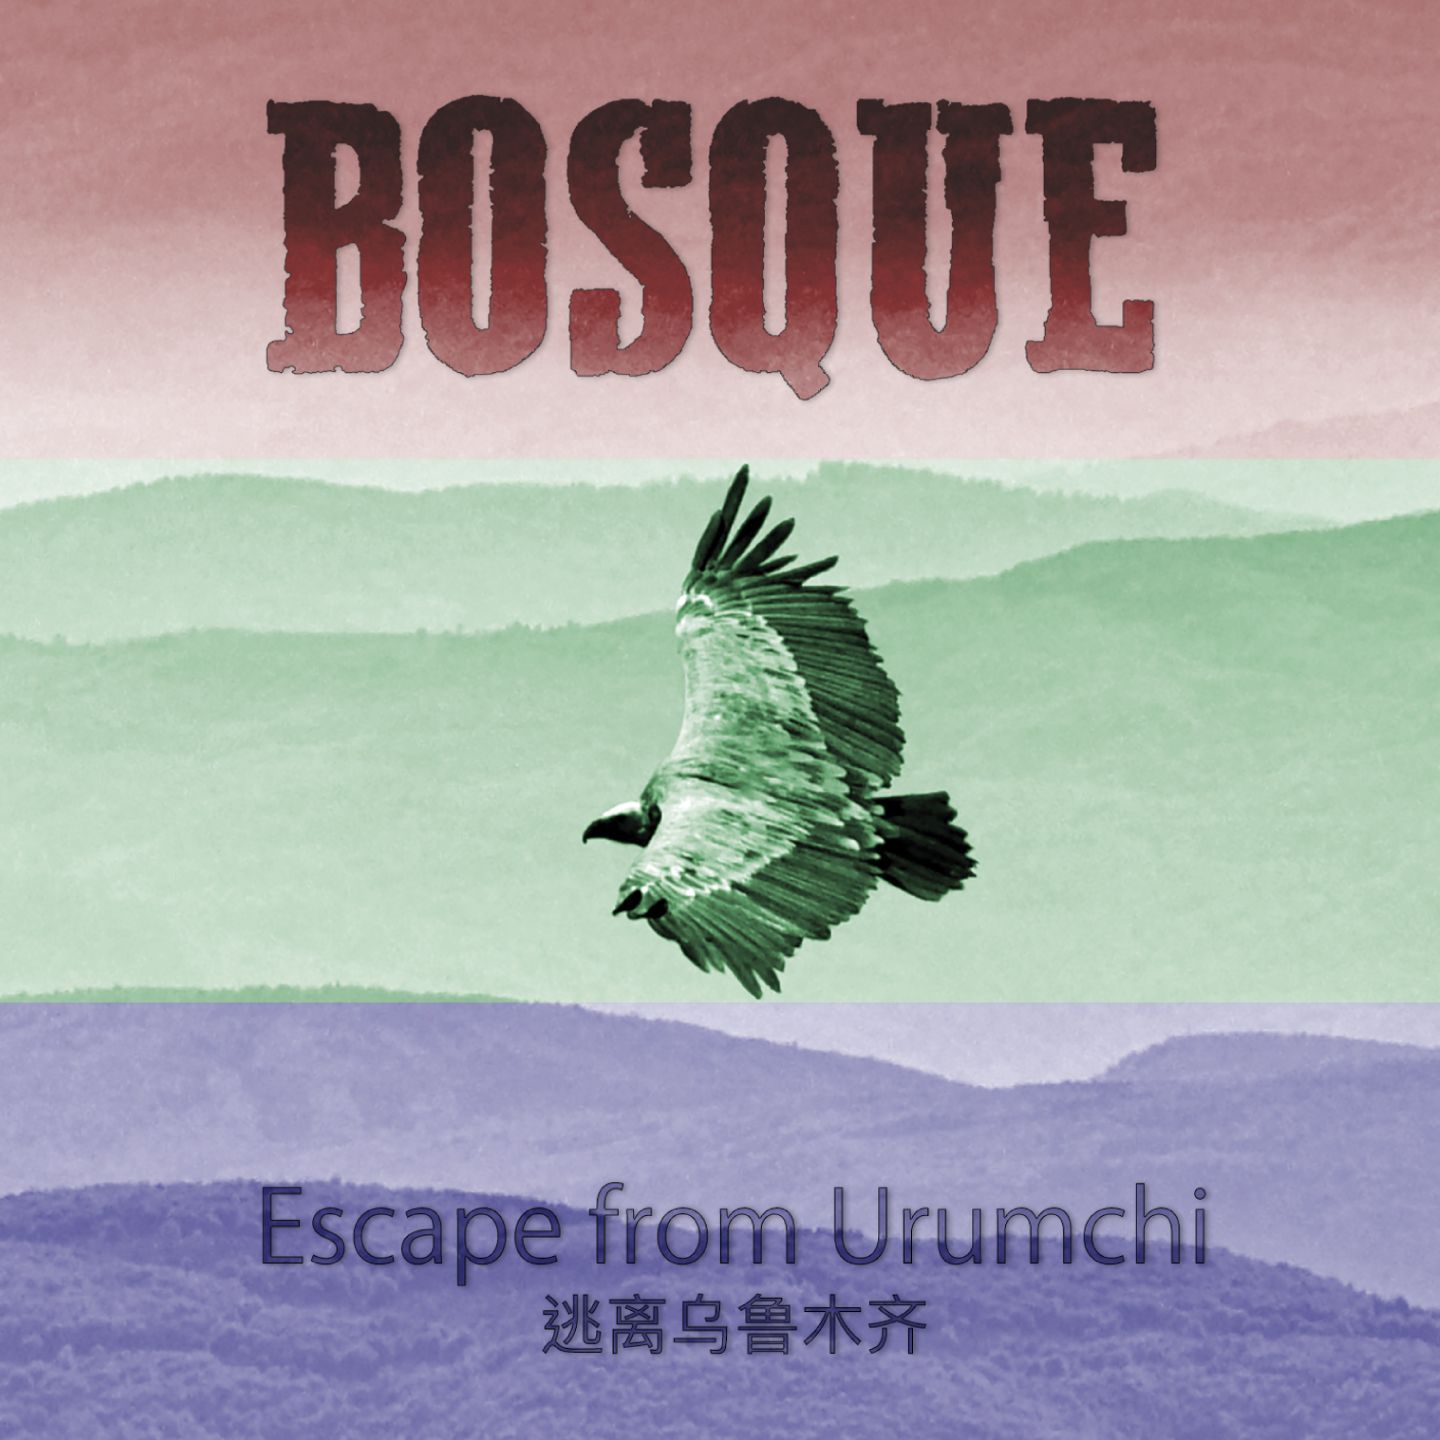 Escape from Urumchi - BOSQUE